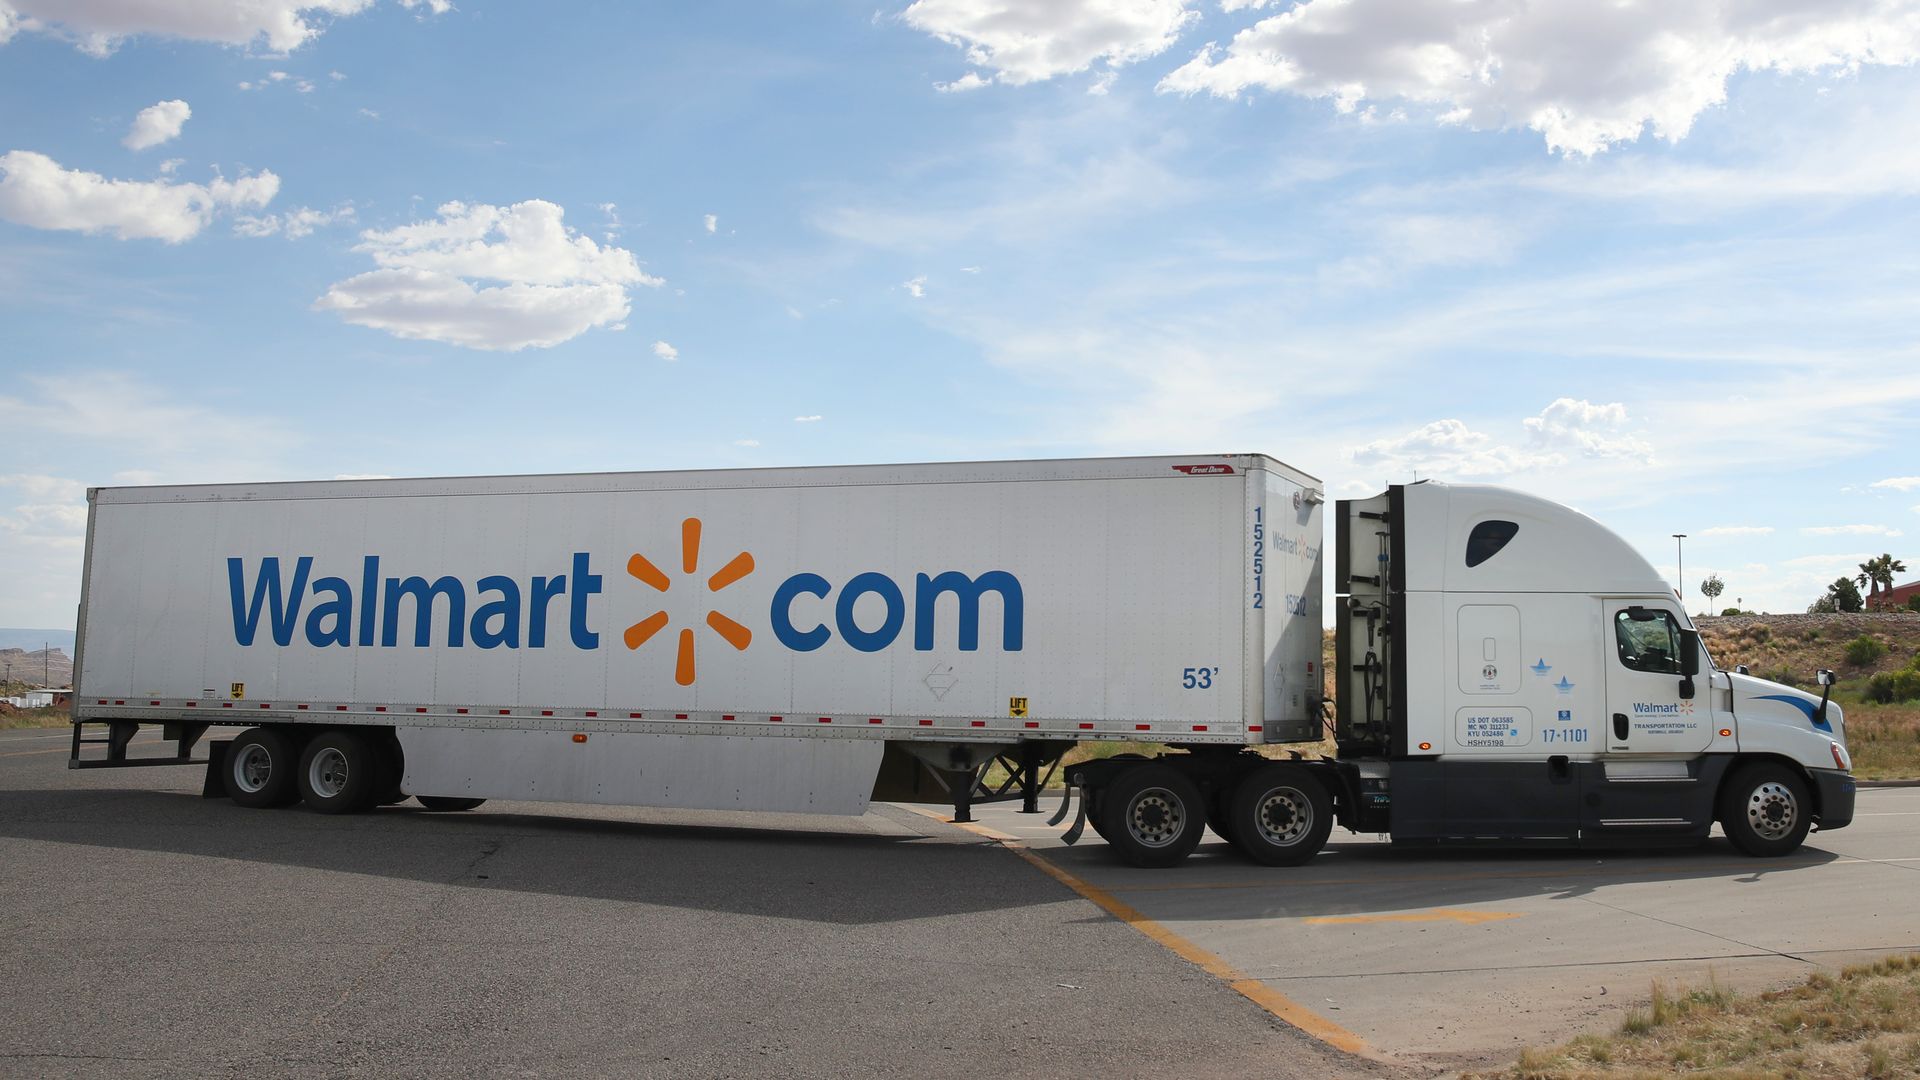 A Walmart truck transporting goods